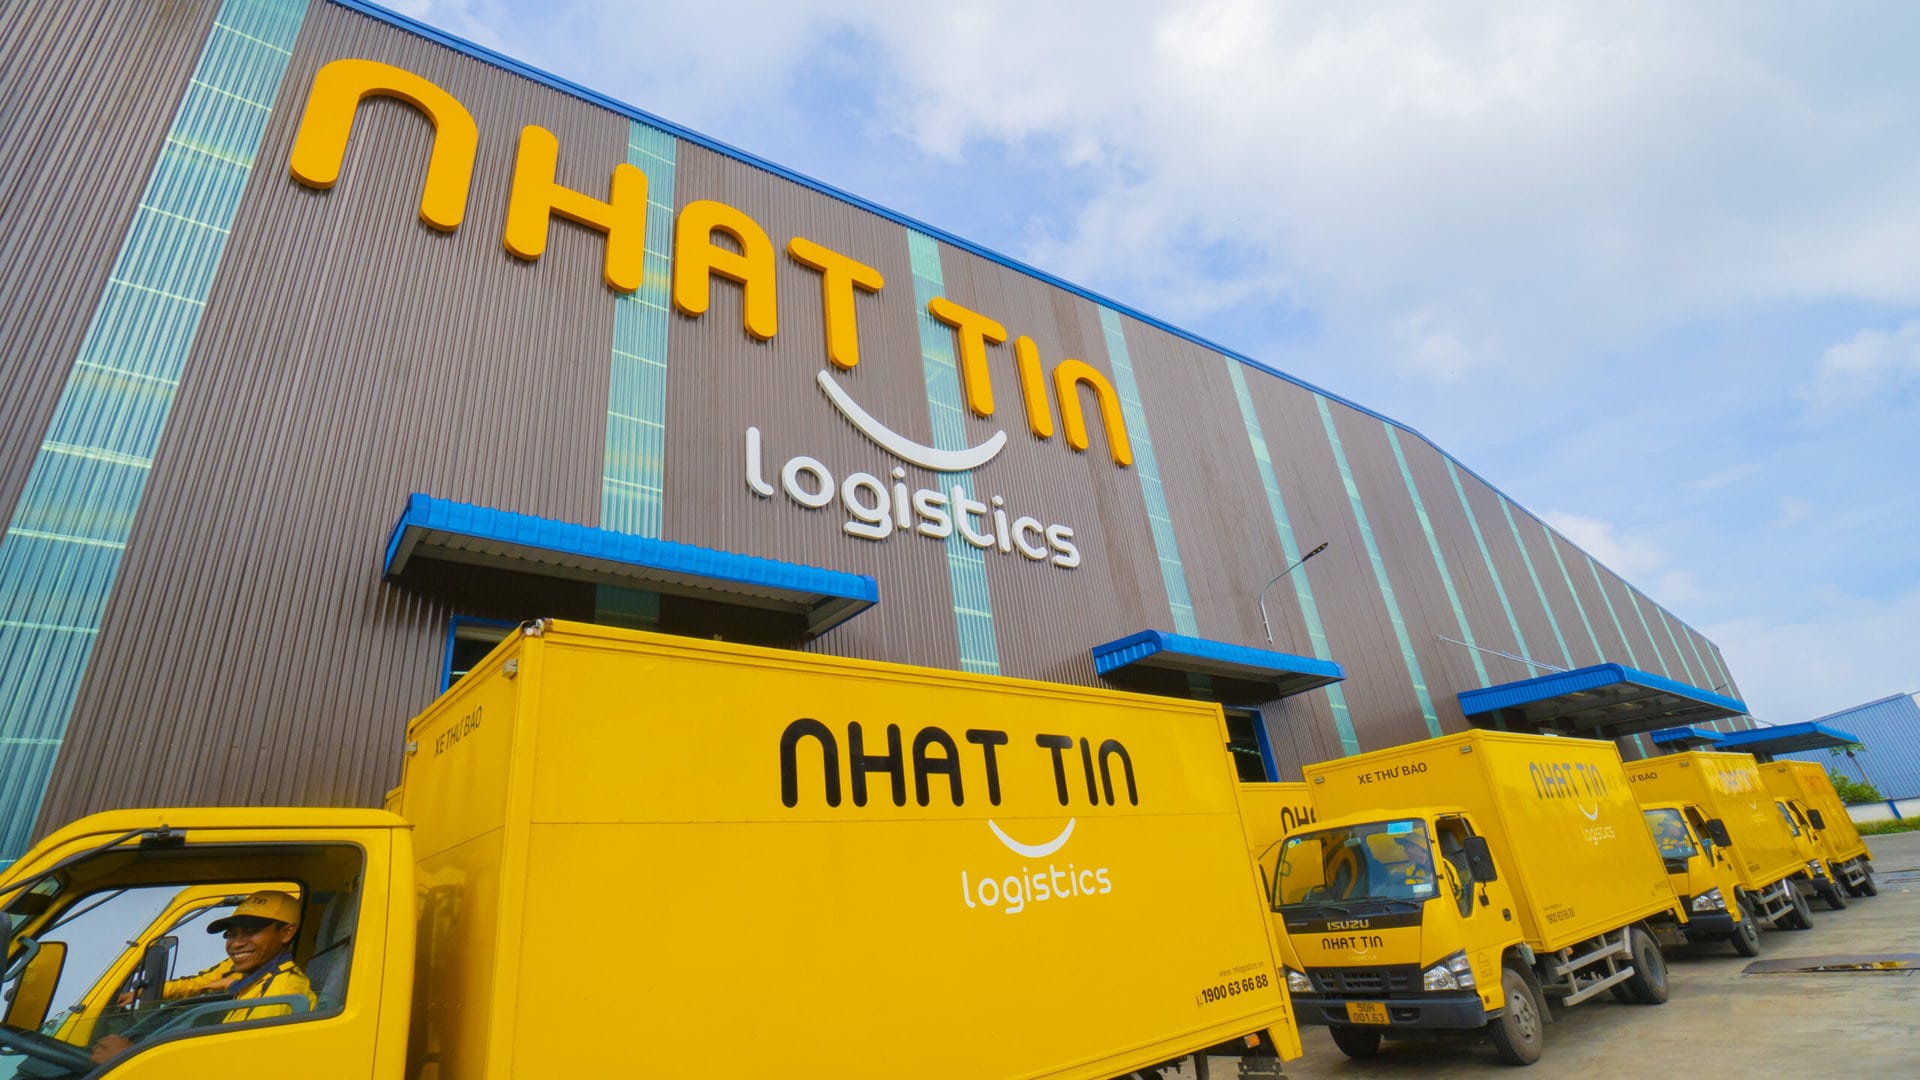 Nhat Tin Logistics Trucks